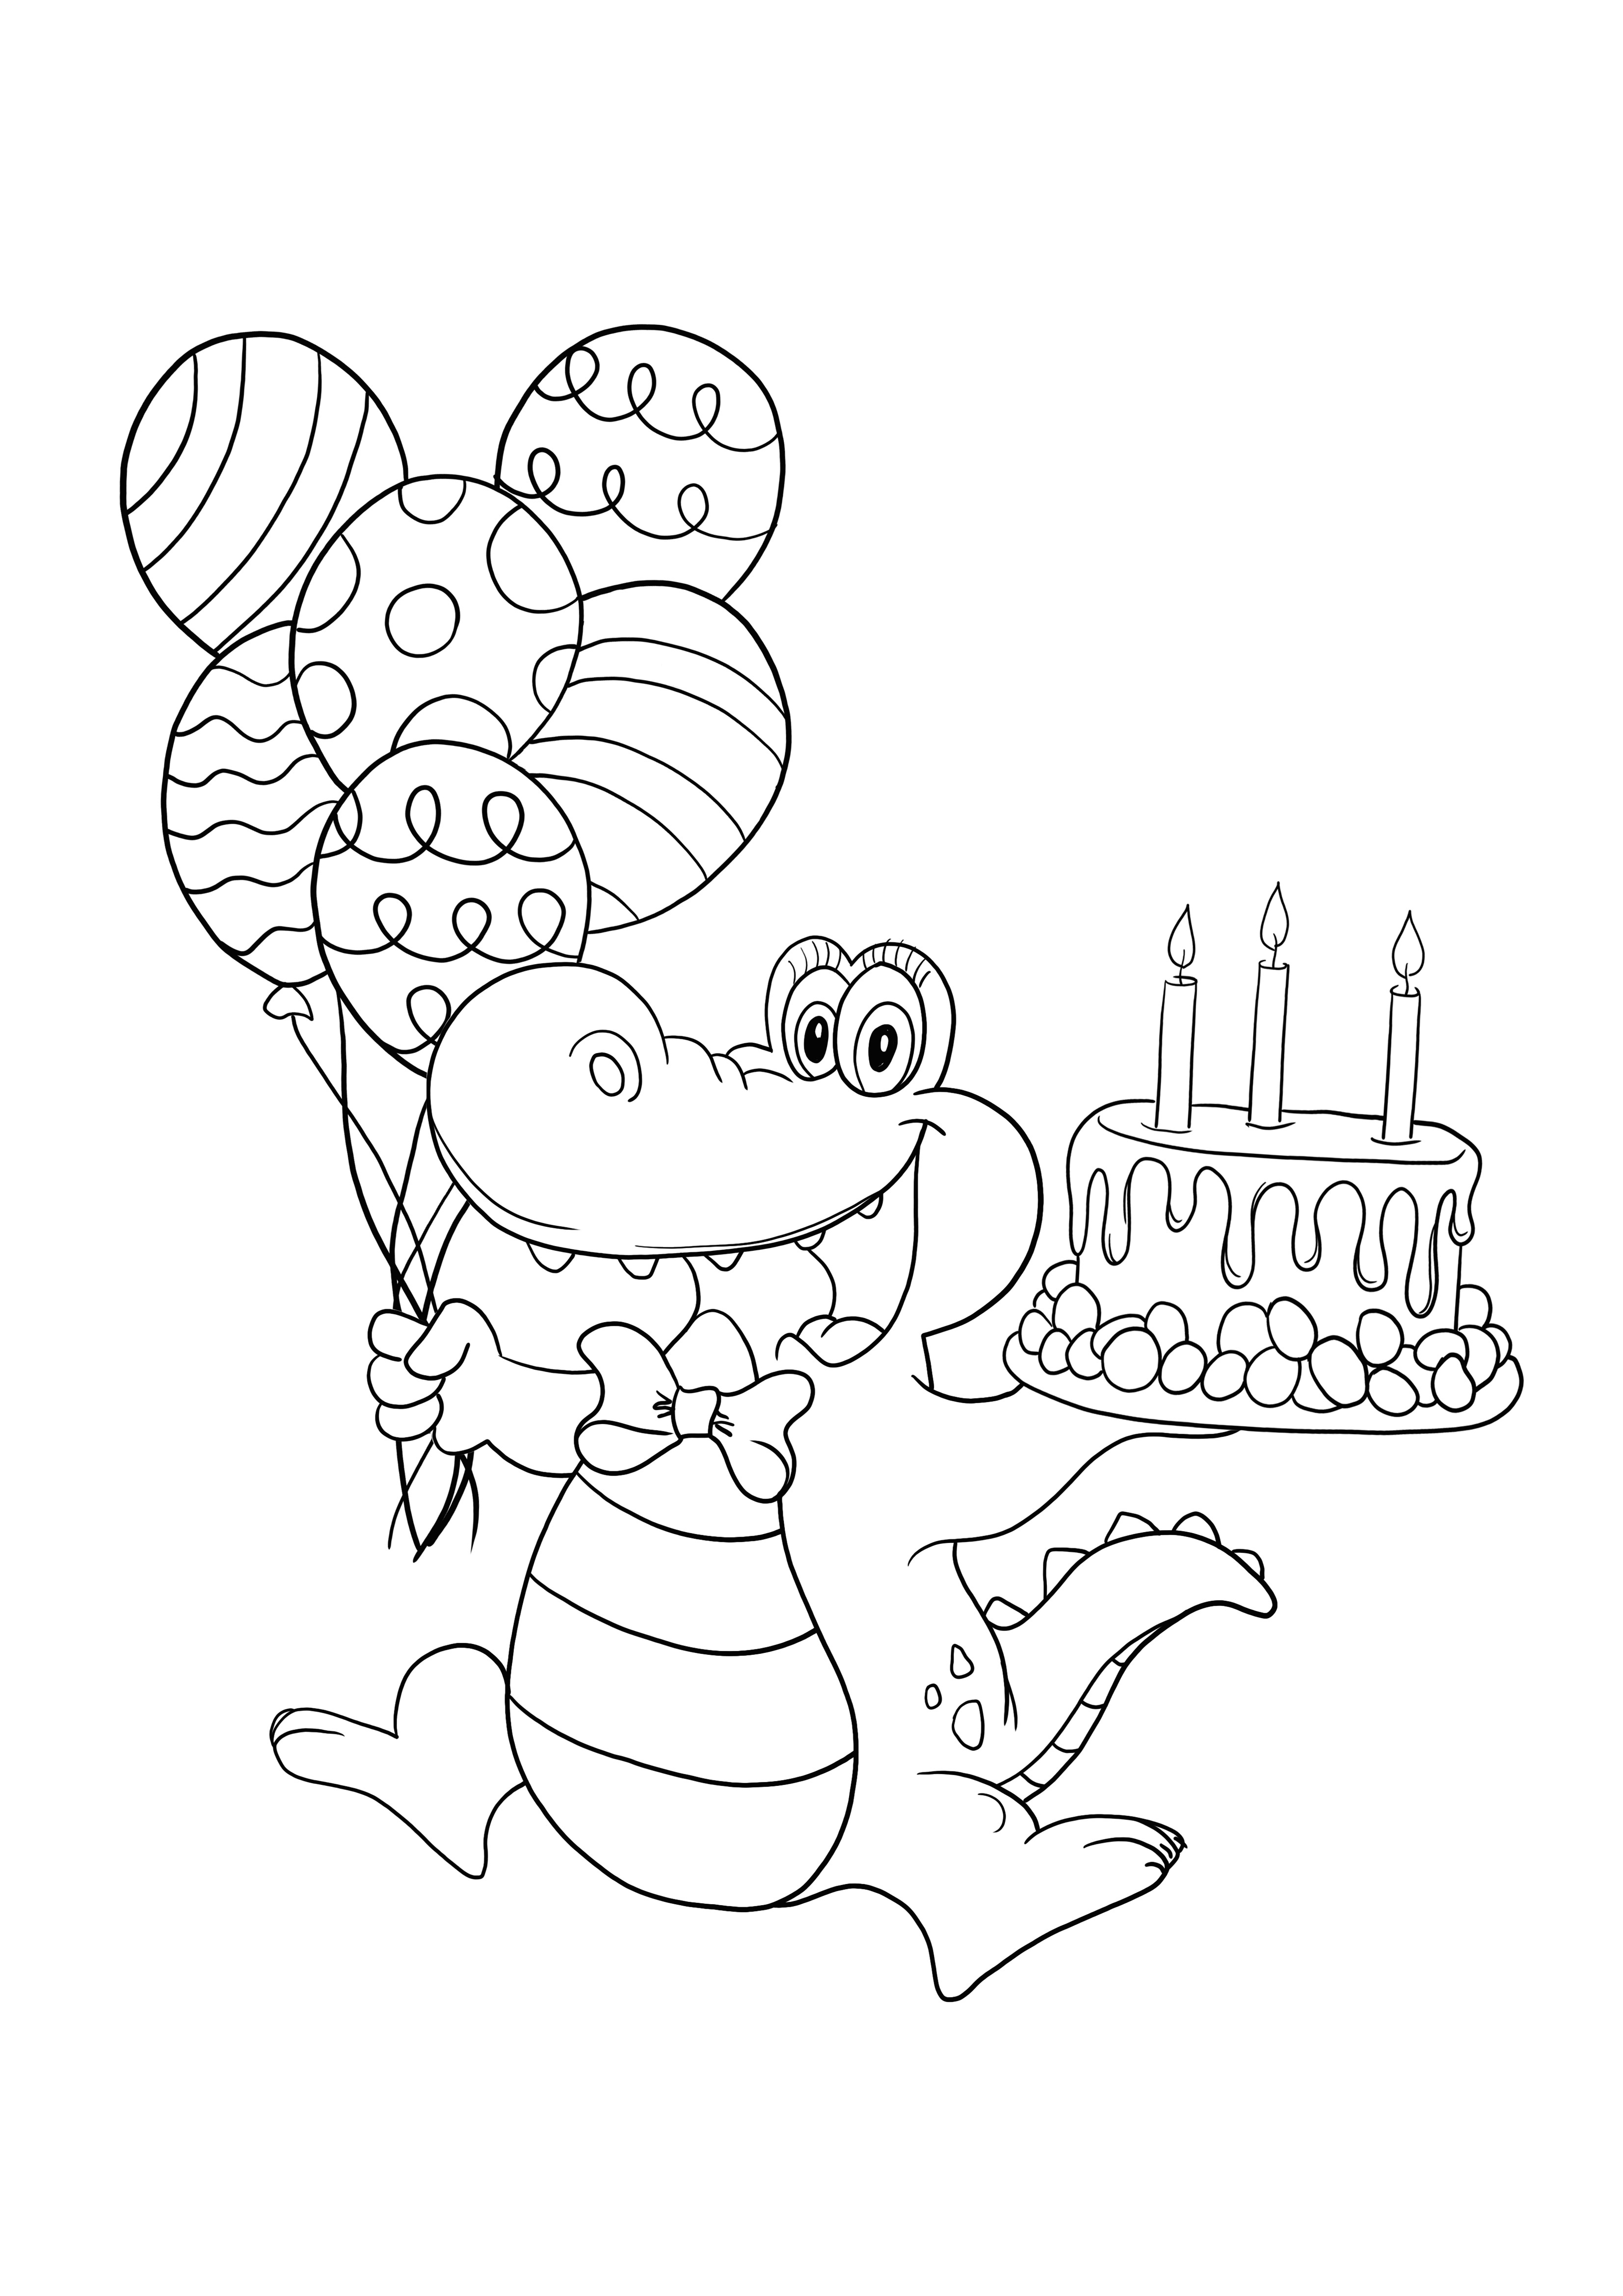 Hyvää syntymäpäivää krokotiili, jonka voit tulostaa ilmaiseksi ja värittää